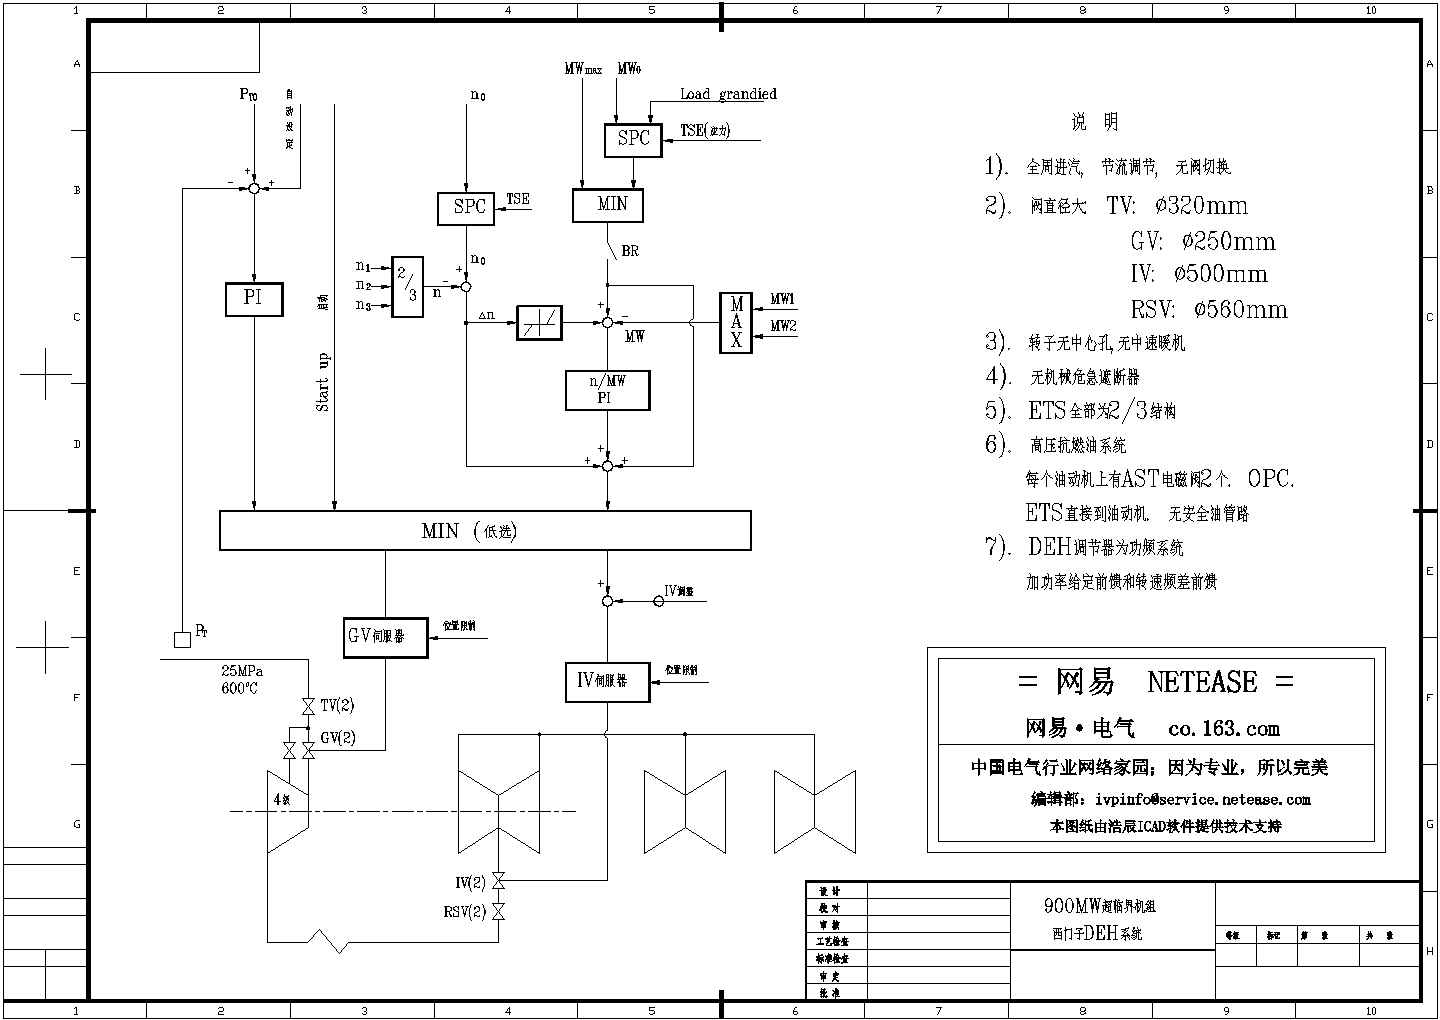 900MW超临界机组DEH电液保安系统图纸设计